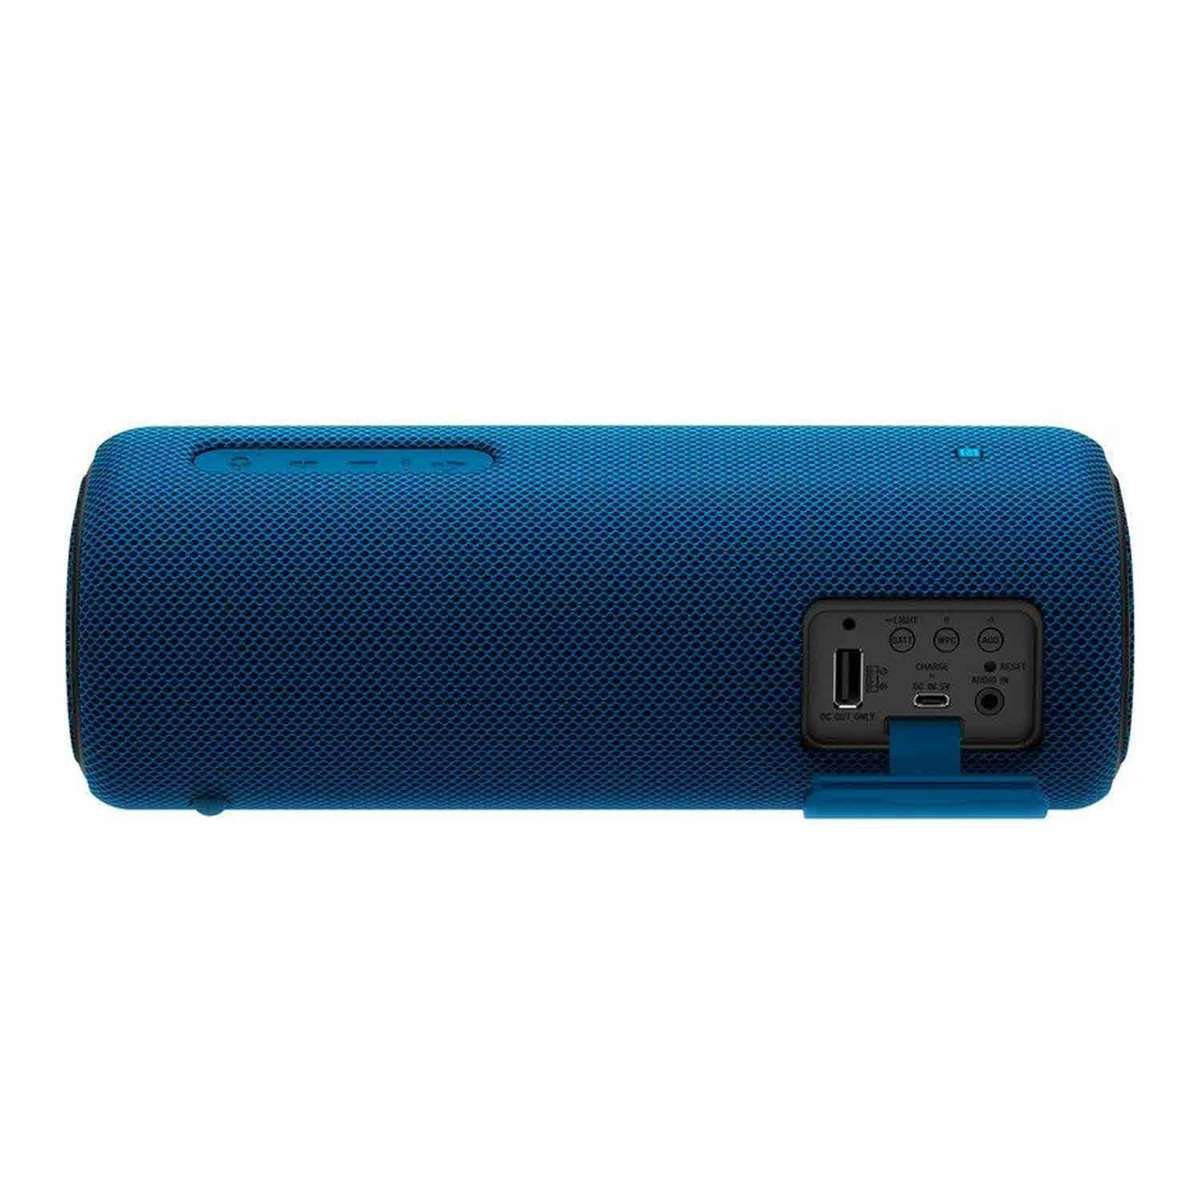 Sony Wireless Bluetooth Speaker SRS-XB31 Blue